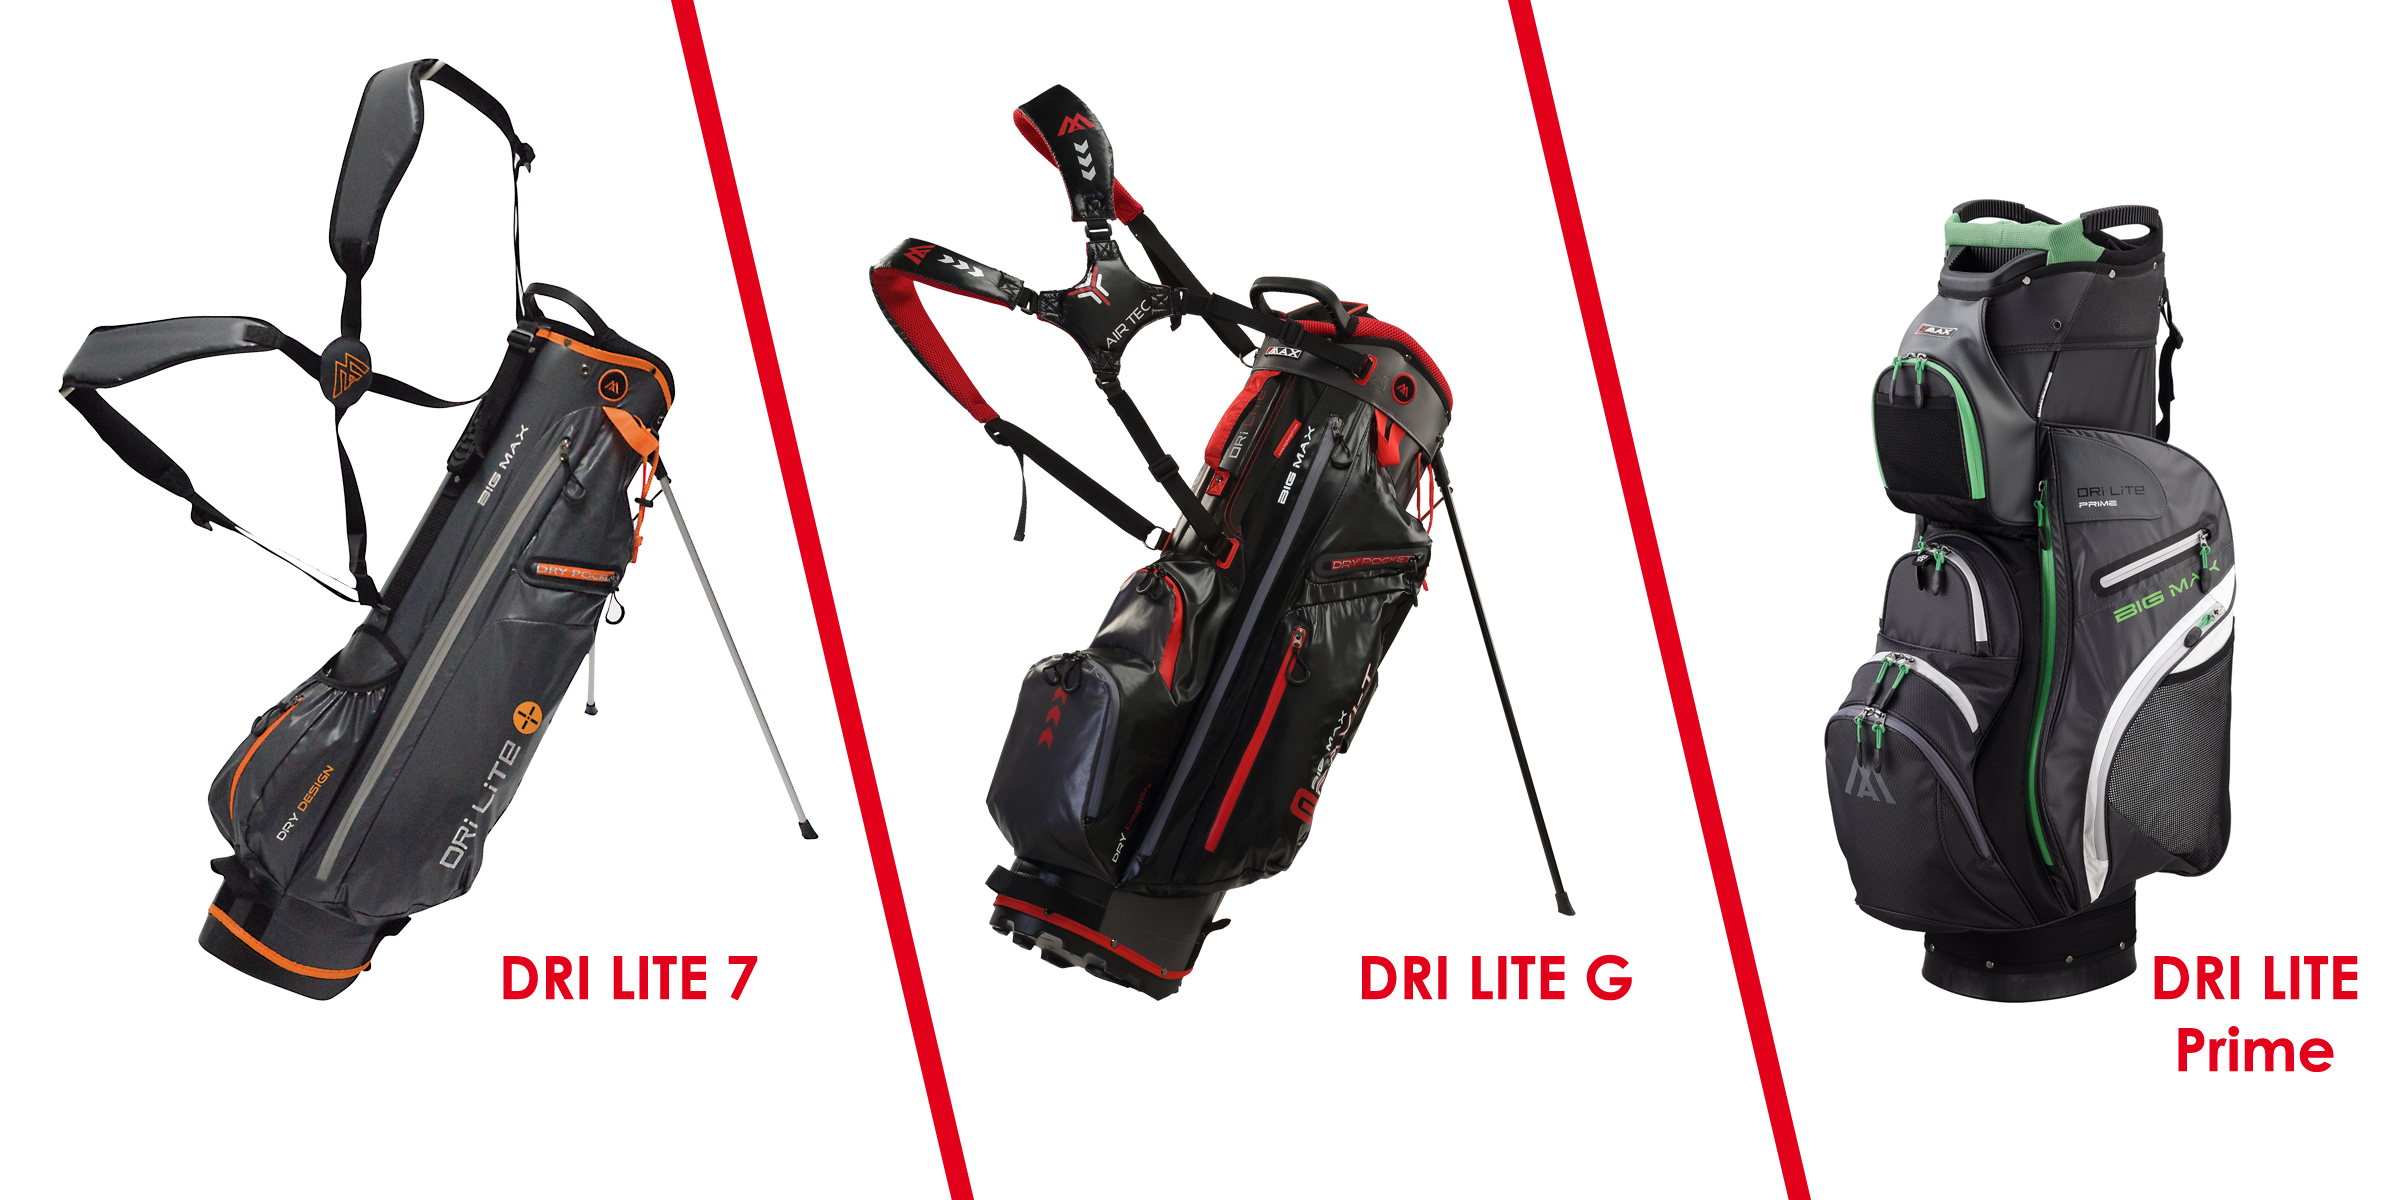 Big Max reveals Dri Lite golf bags